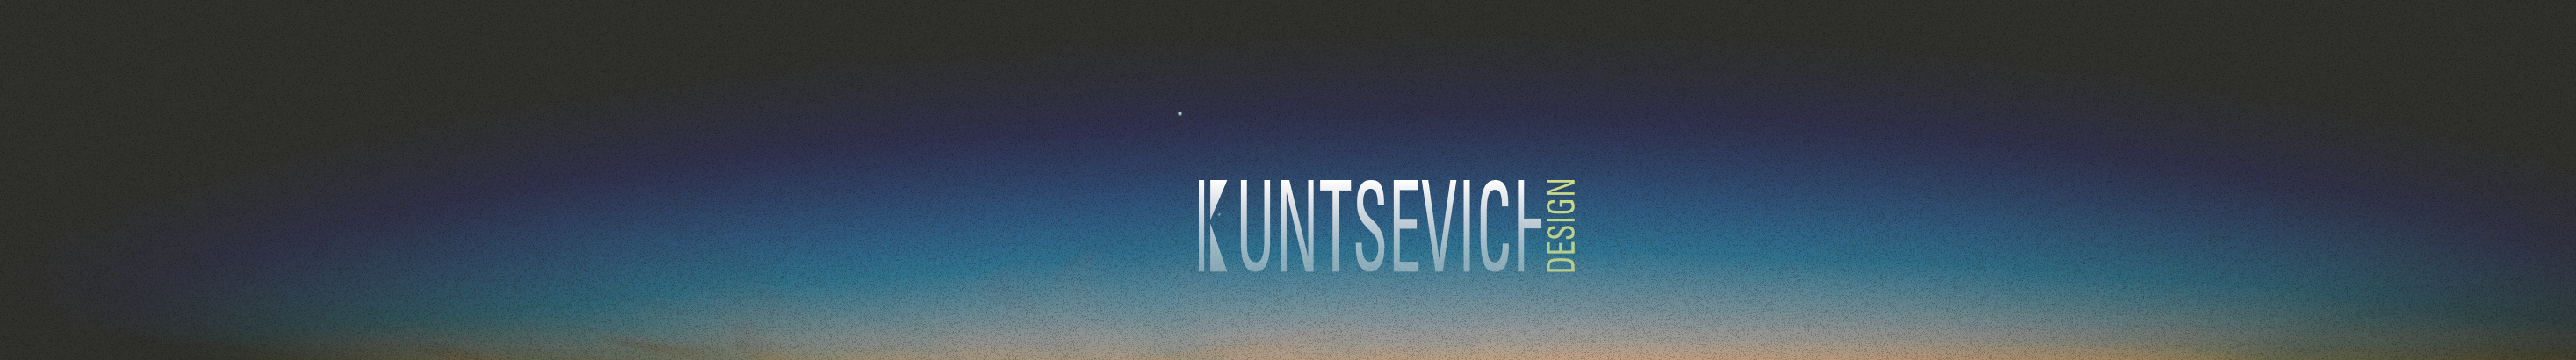 Ivan Kuntsevich's profile banner